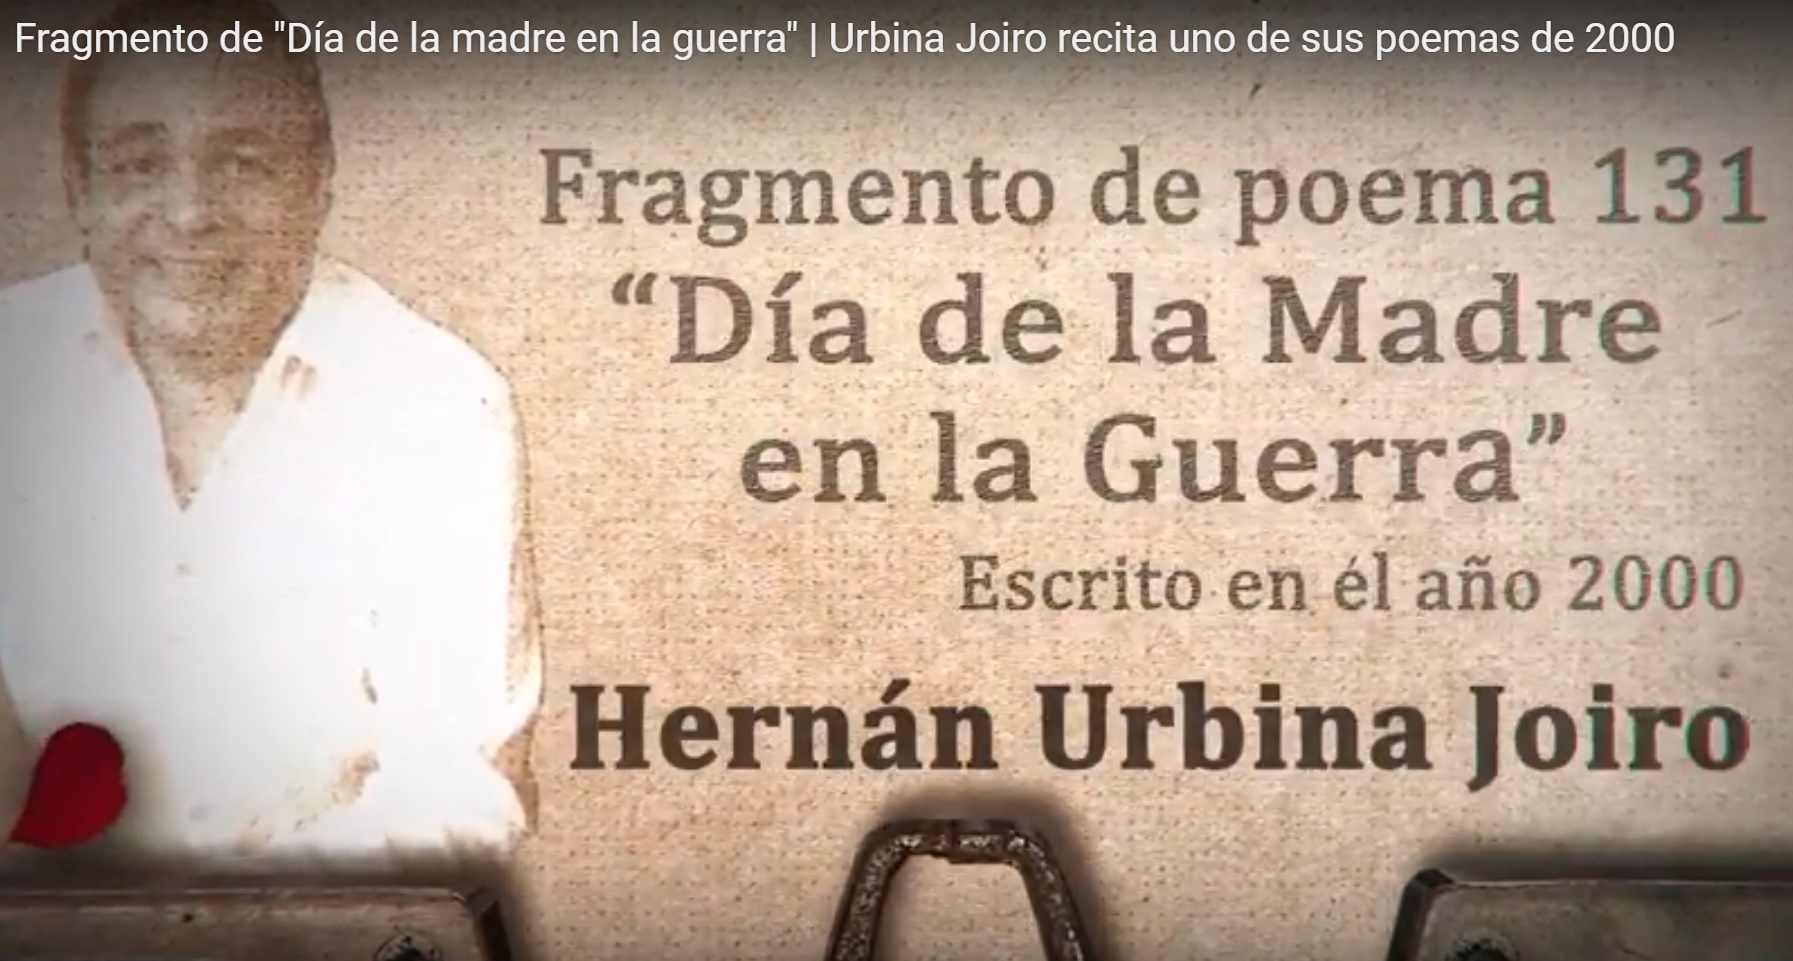 Urbina Joiro recita fragmento de "Día de la madre en la guerra" (2000)